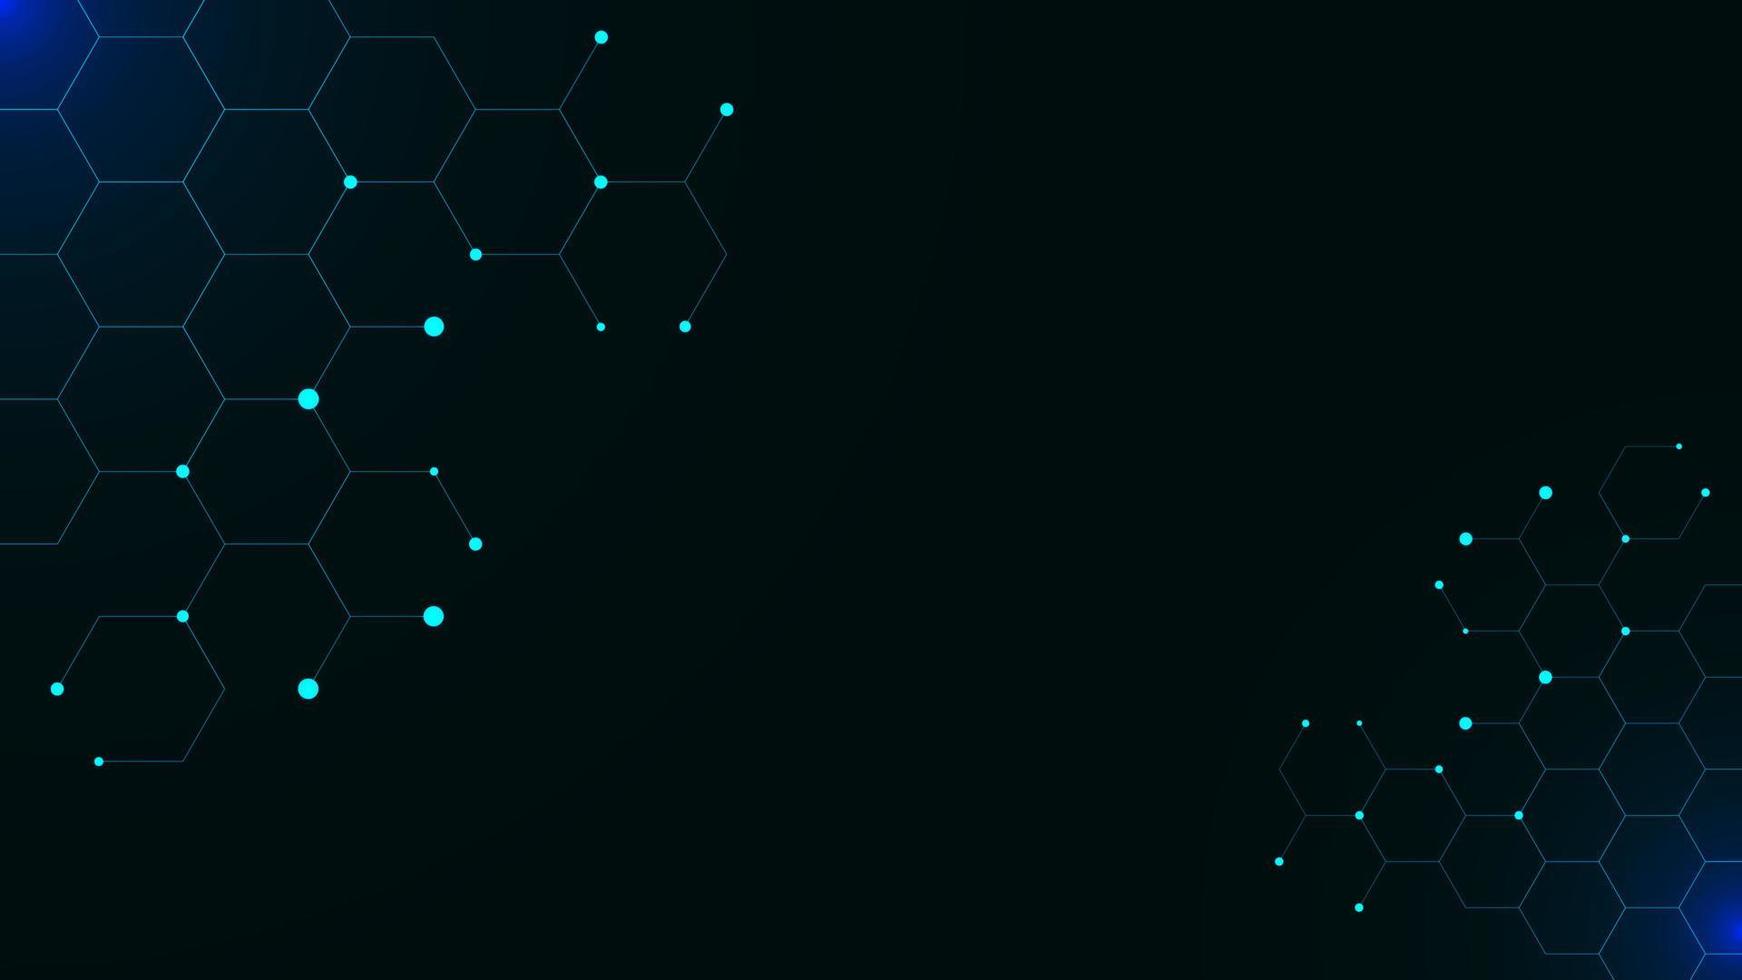 hexagonal med lysande partiklar på mörk blå bakgrund. vetenskap, teknologi, medicin, kemi, data nätverk bakgrund design. vektor illustration.